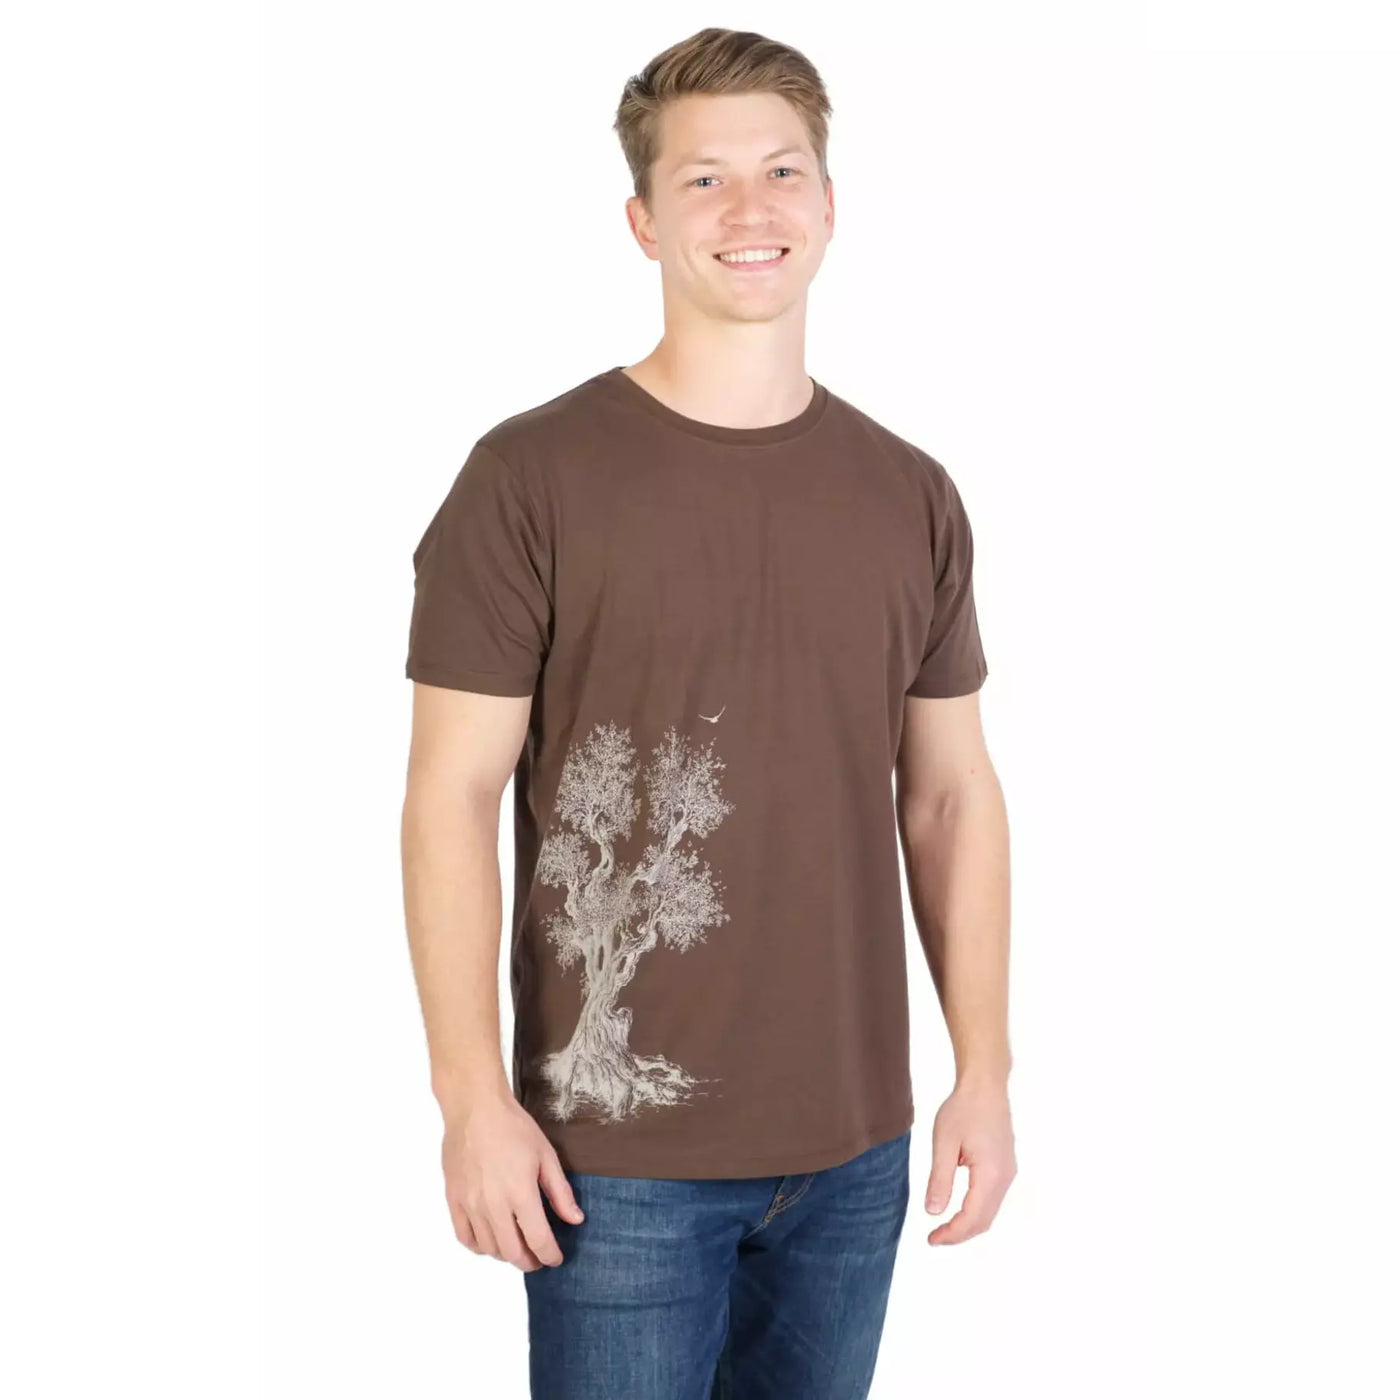 Fairwear Organic Shirt Men Dark Brown Olive Tree